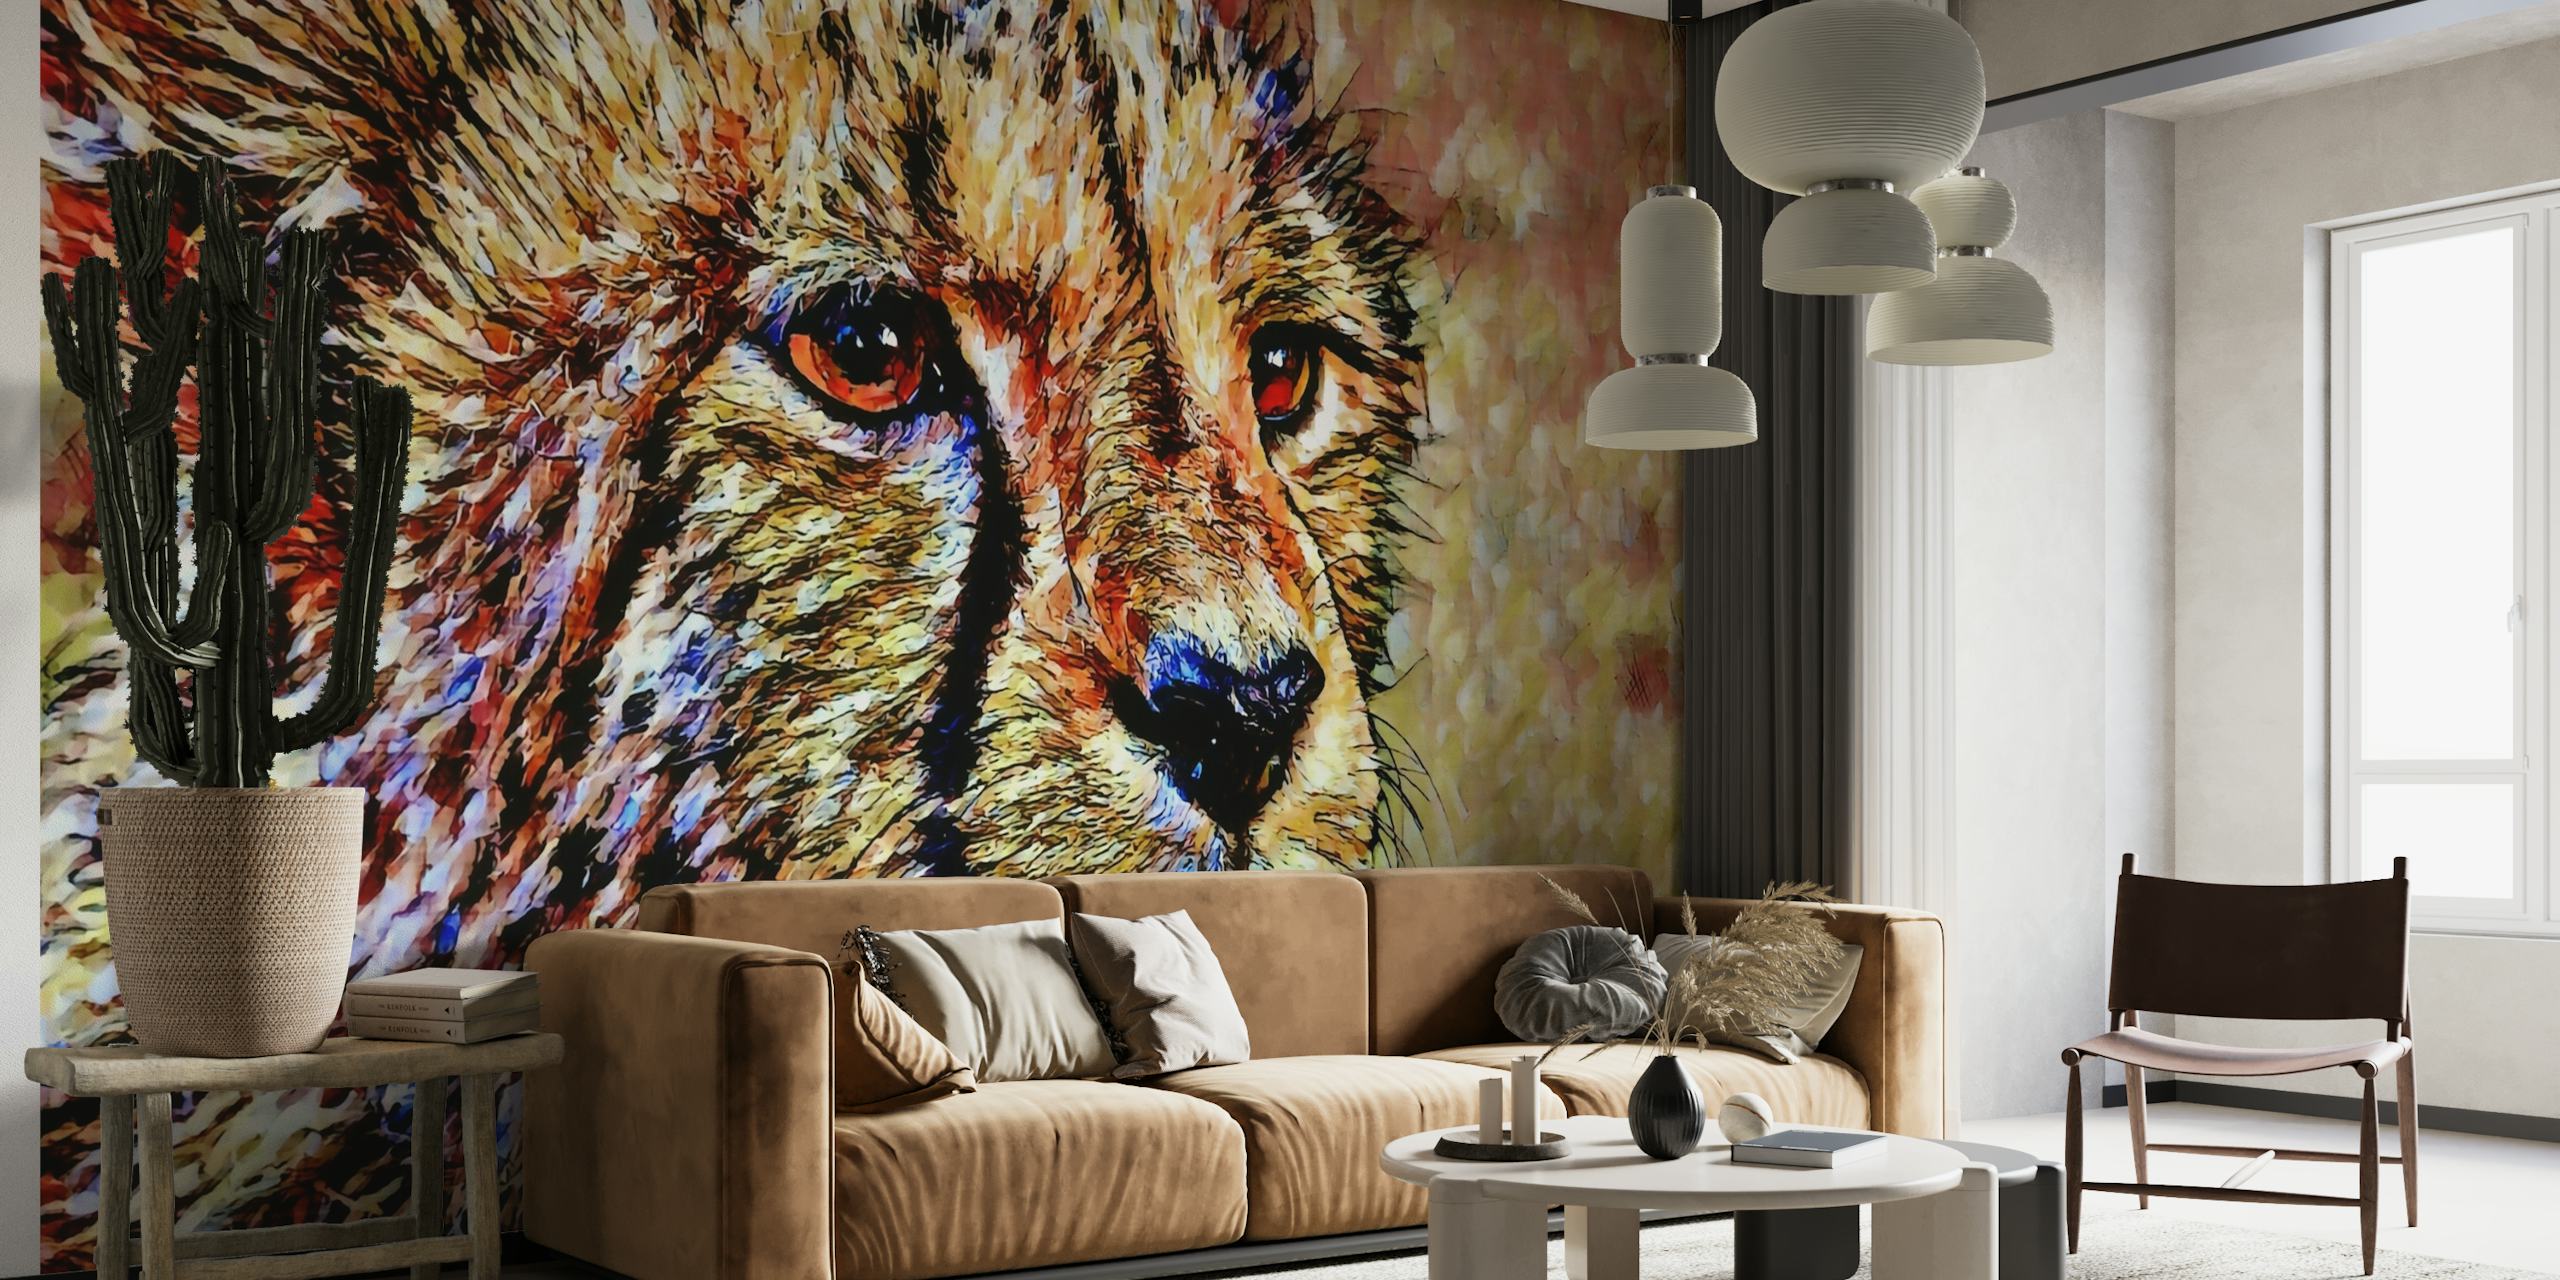 Artistieke cheetah muurschildering met kleurrijke, getextureerde penseelstreken